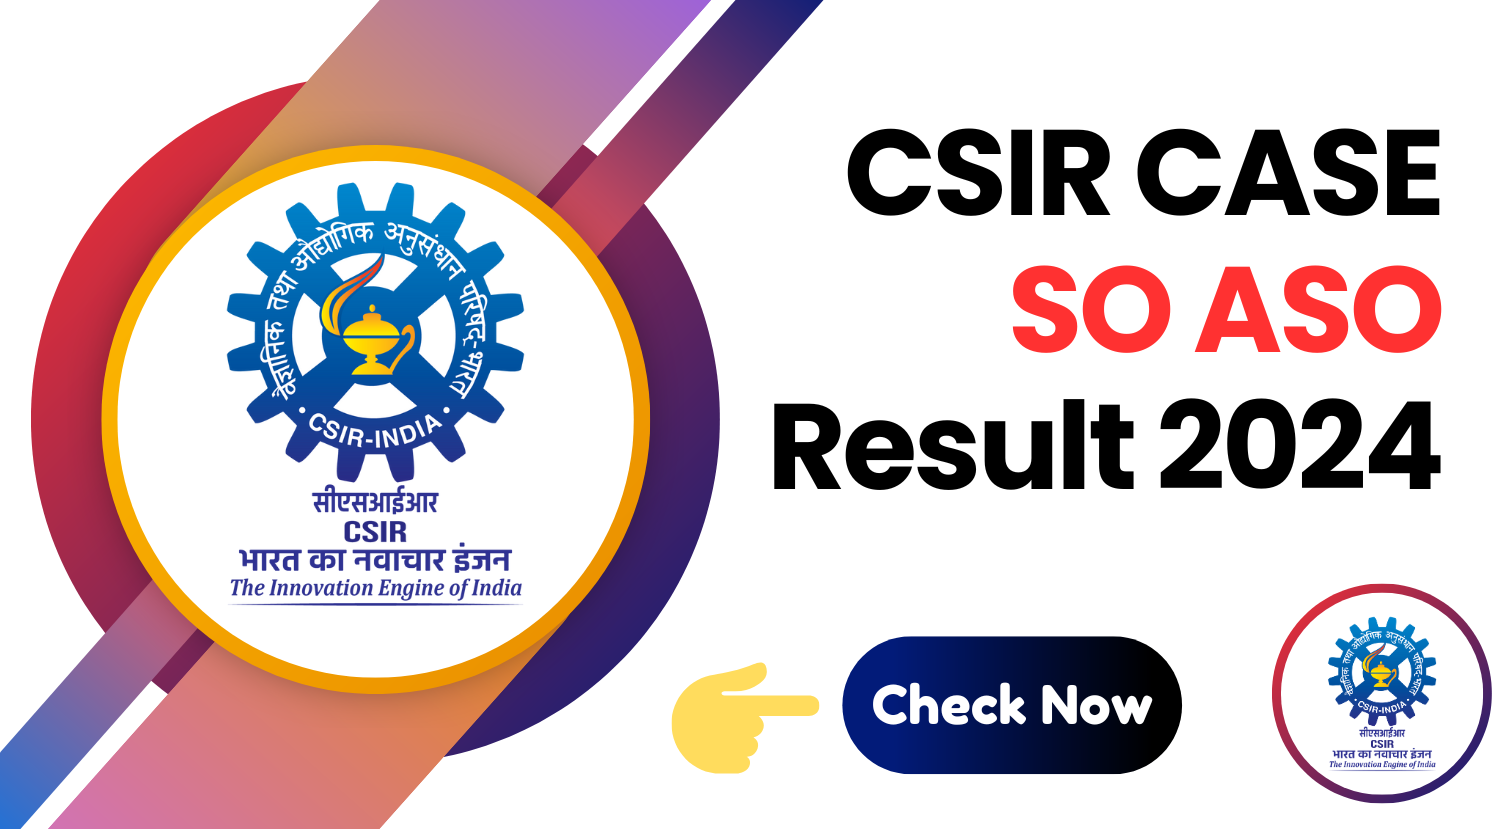 CSIR-CASE-SO-ASO-Result-2024